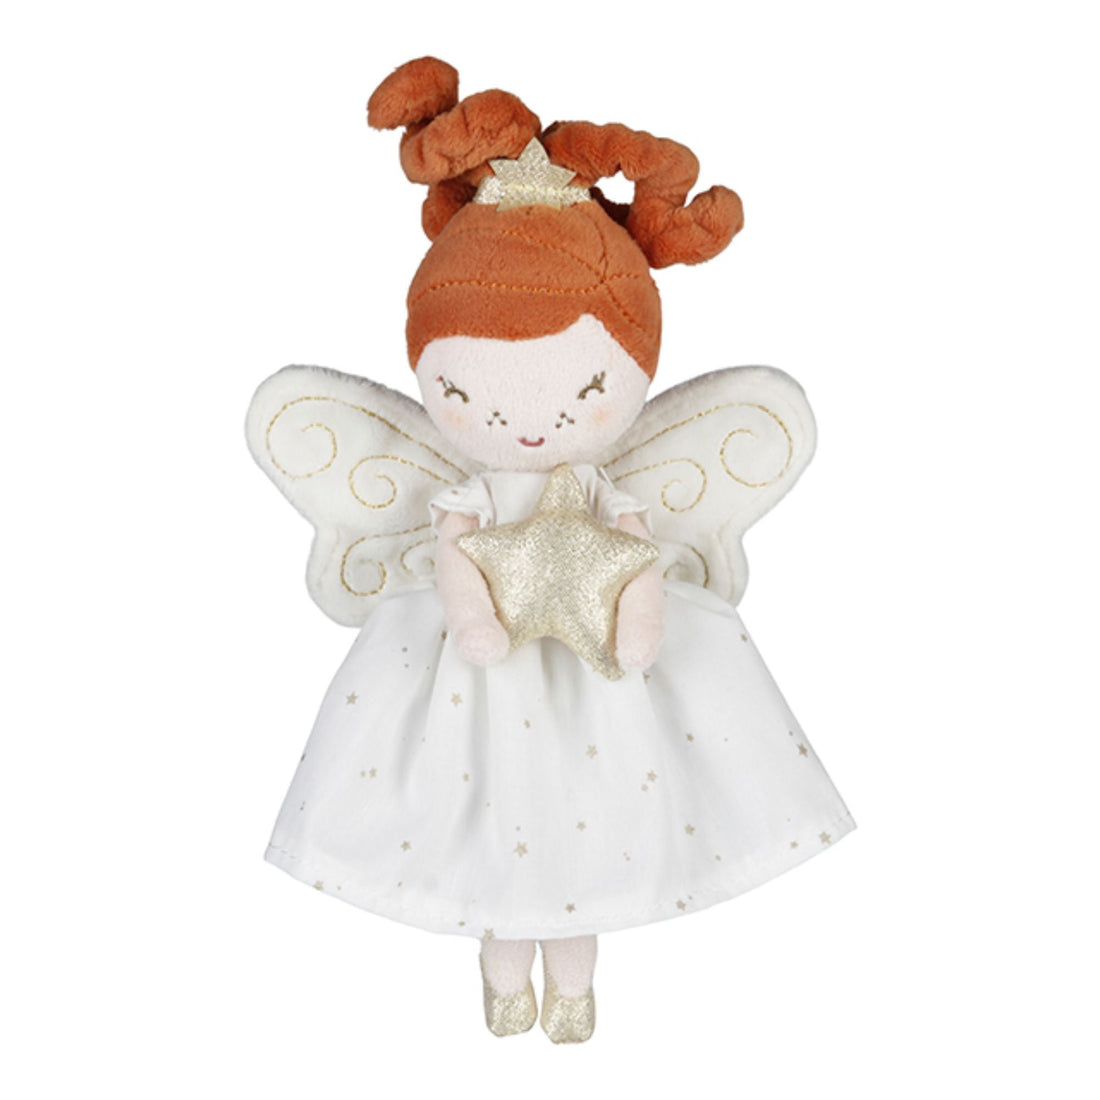 Fėja Mia - The Fairy of Hope - little-goose.com